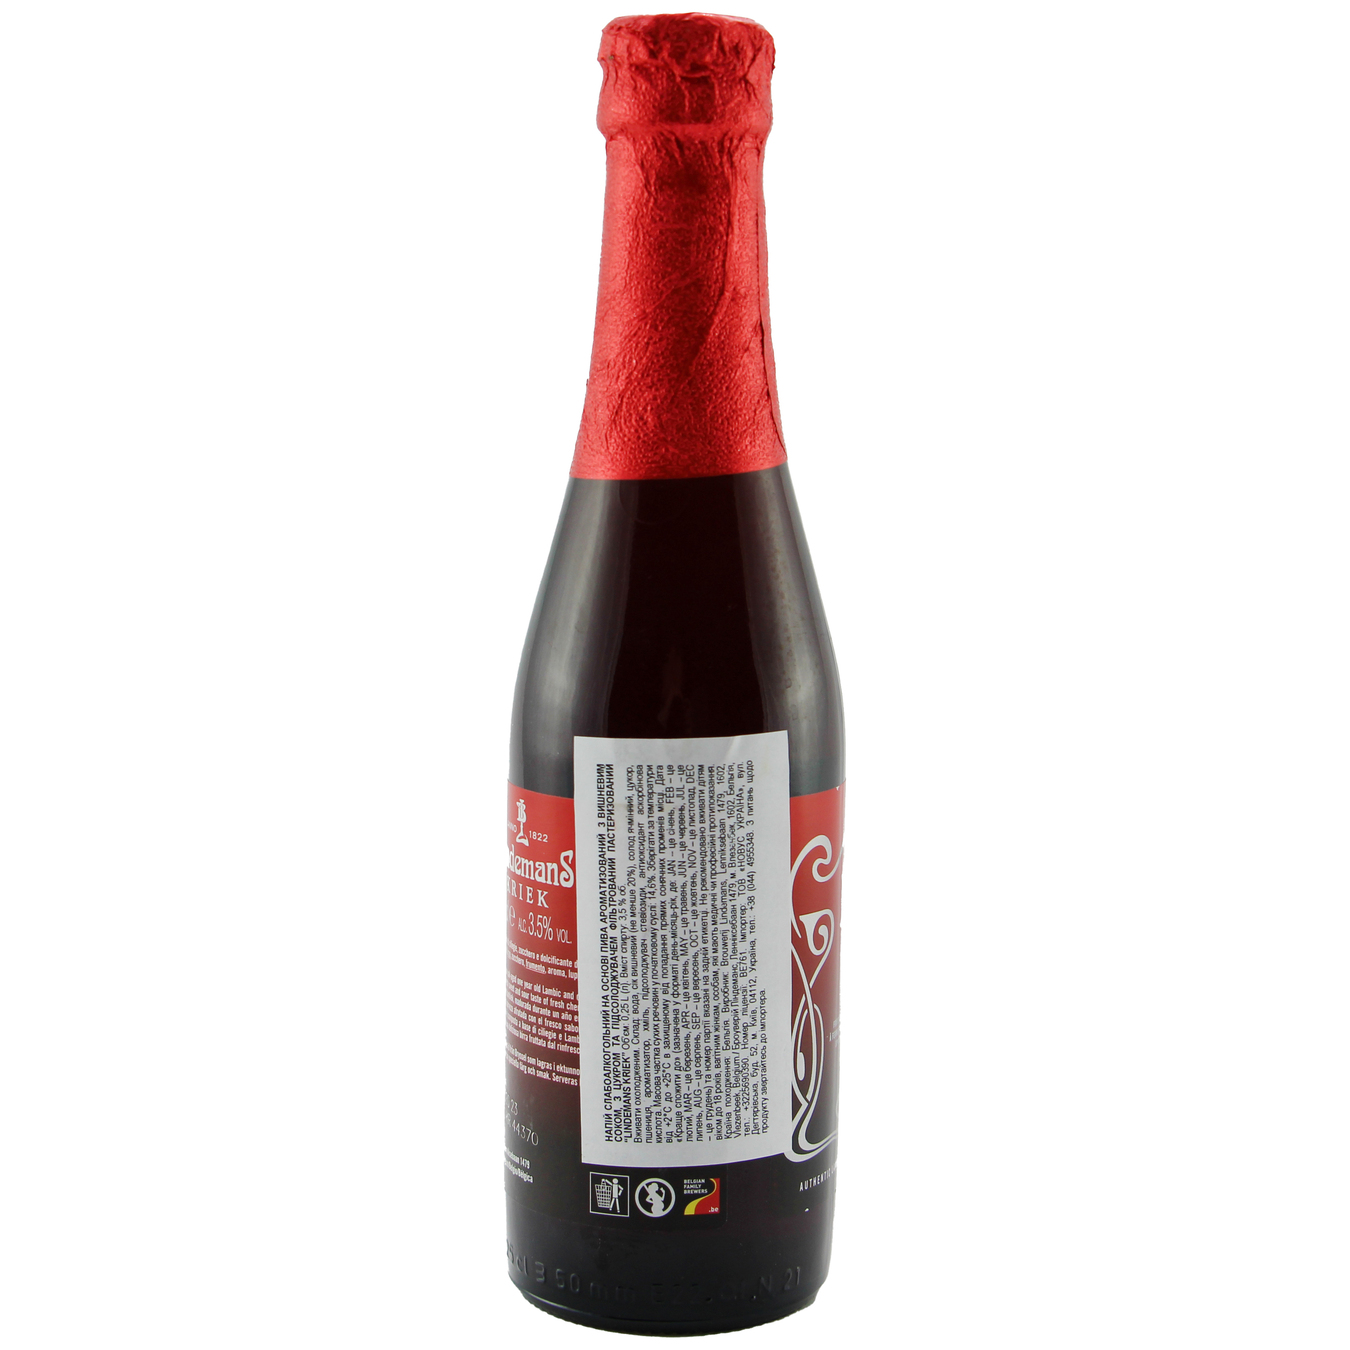 Lindemans Kriek red beer 3,5% 0,25l 3